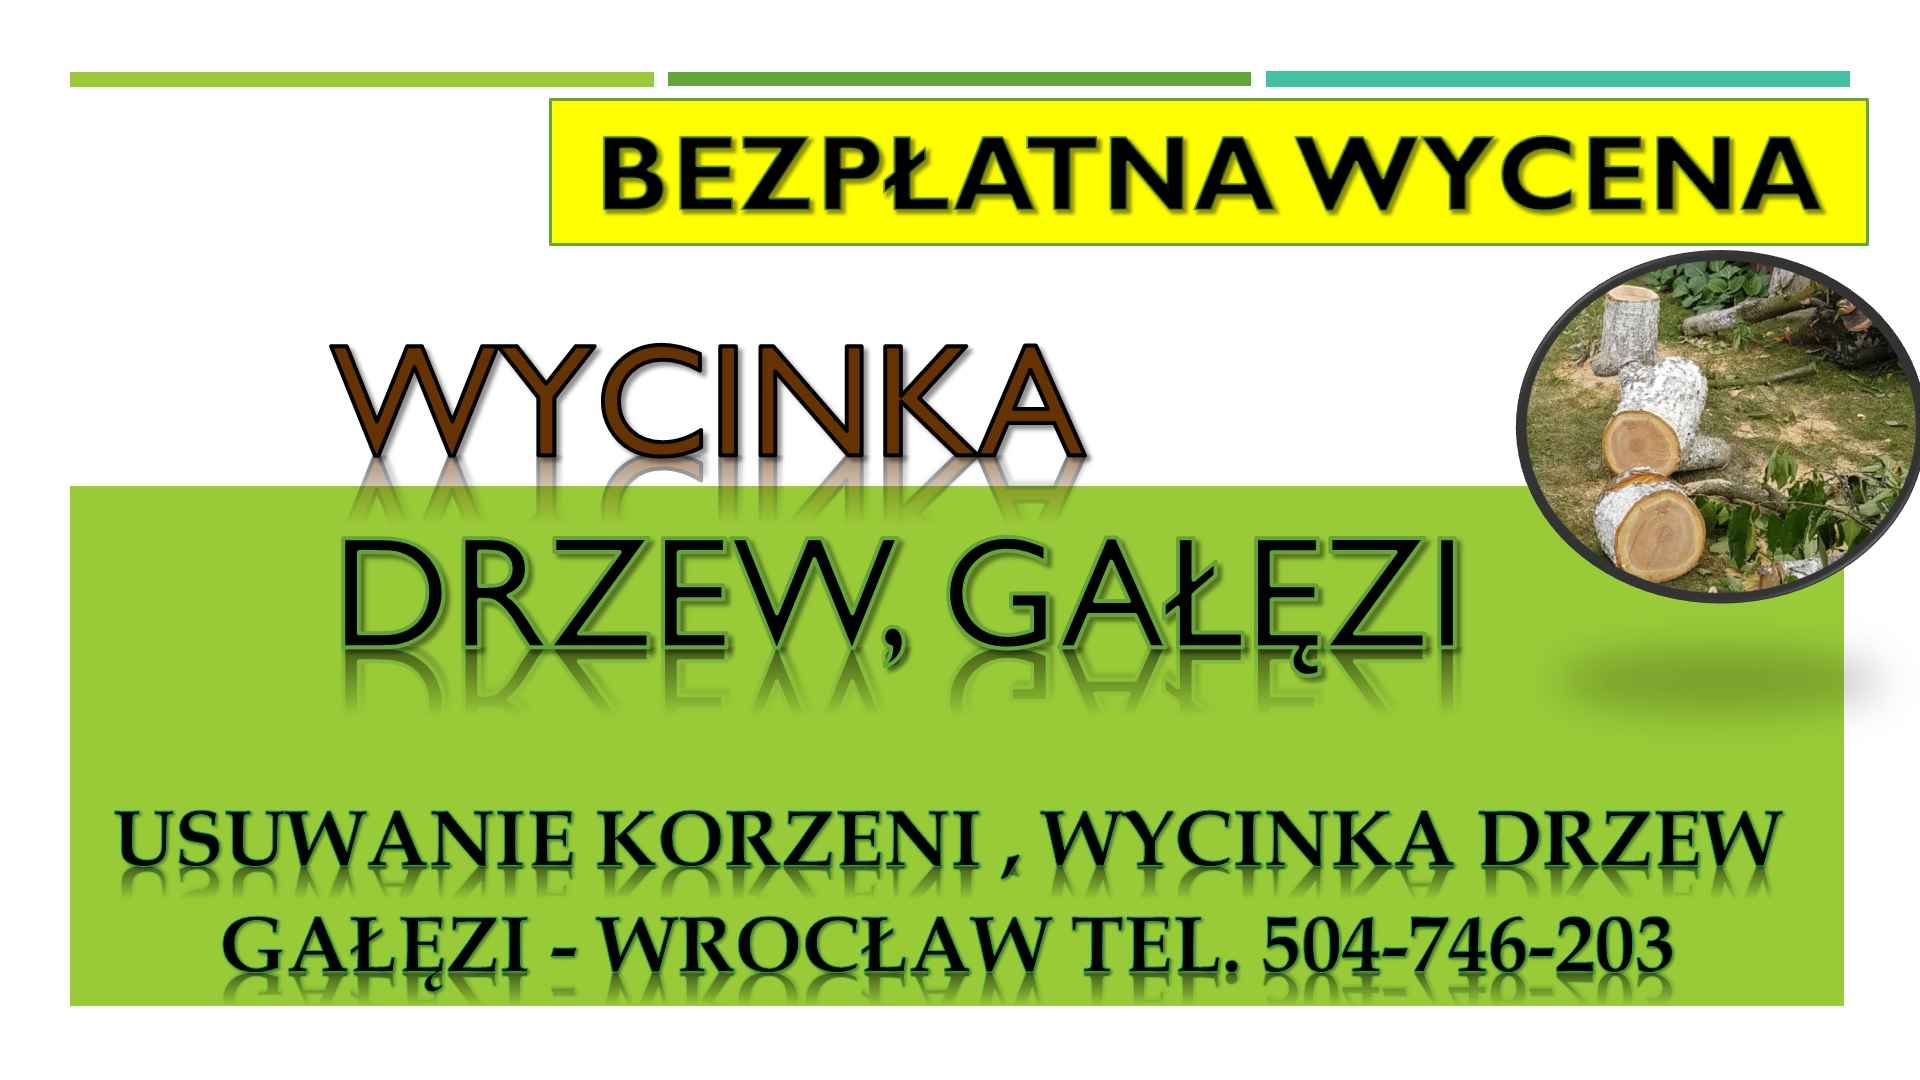 Usuwanie korzeni, cennik , tel. 504-746-203. Wrocław. pni, pnia drzewa Psie Pole - zdjęcie 3